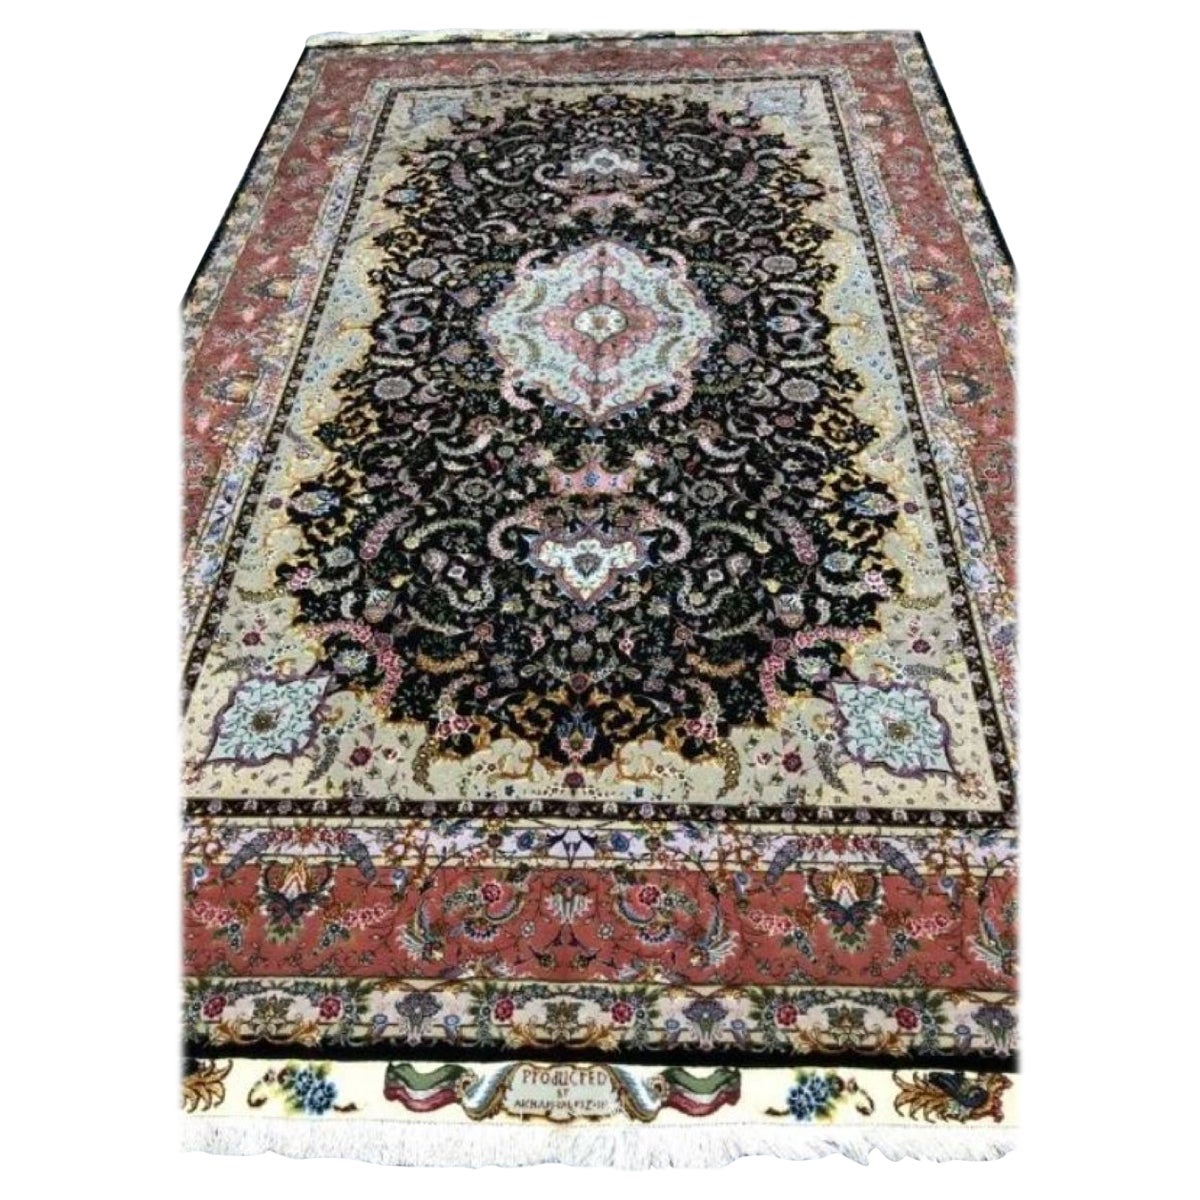 Très beau tapis persan de Tabriz avec des poils de laine et de soie et une base en soie. Ce tapis comporte environ 650 nœuds par pouce carré, soit un total de 6 500 000 nœuds noués à la main un par un. Il a fallu 3,5 ans pour réaliser cette